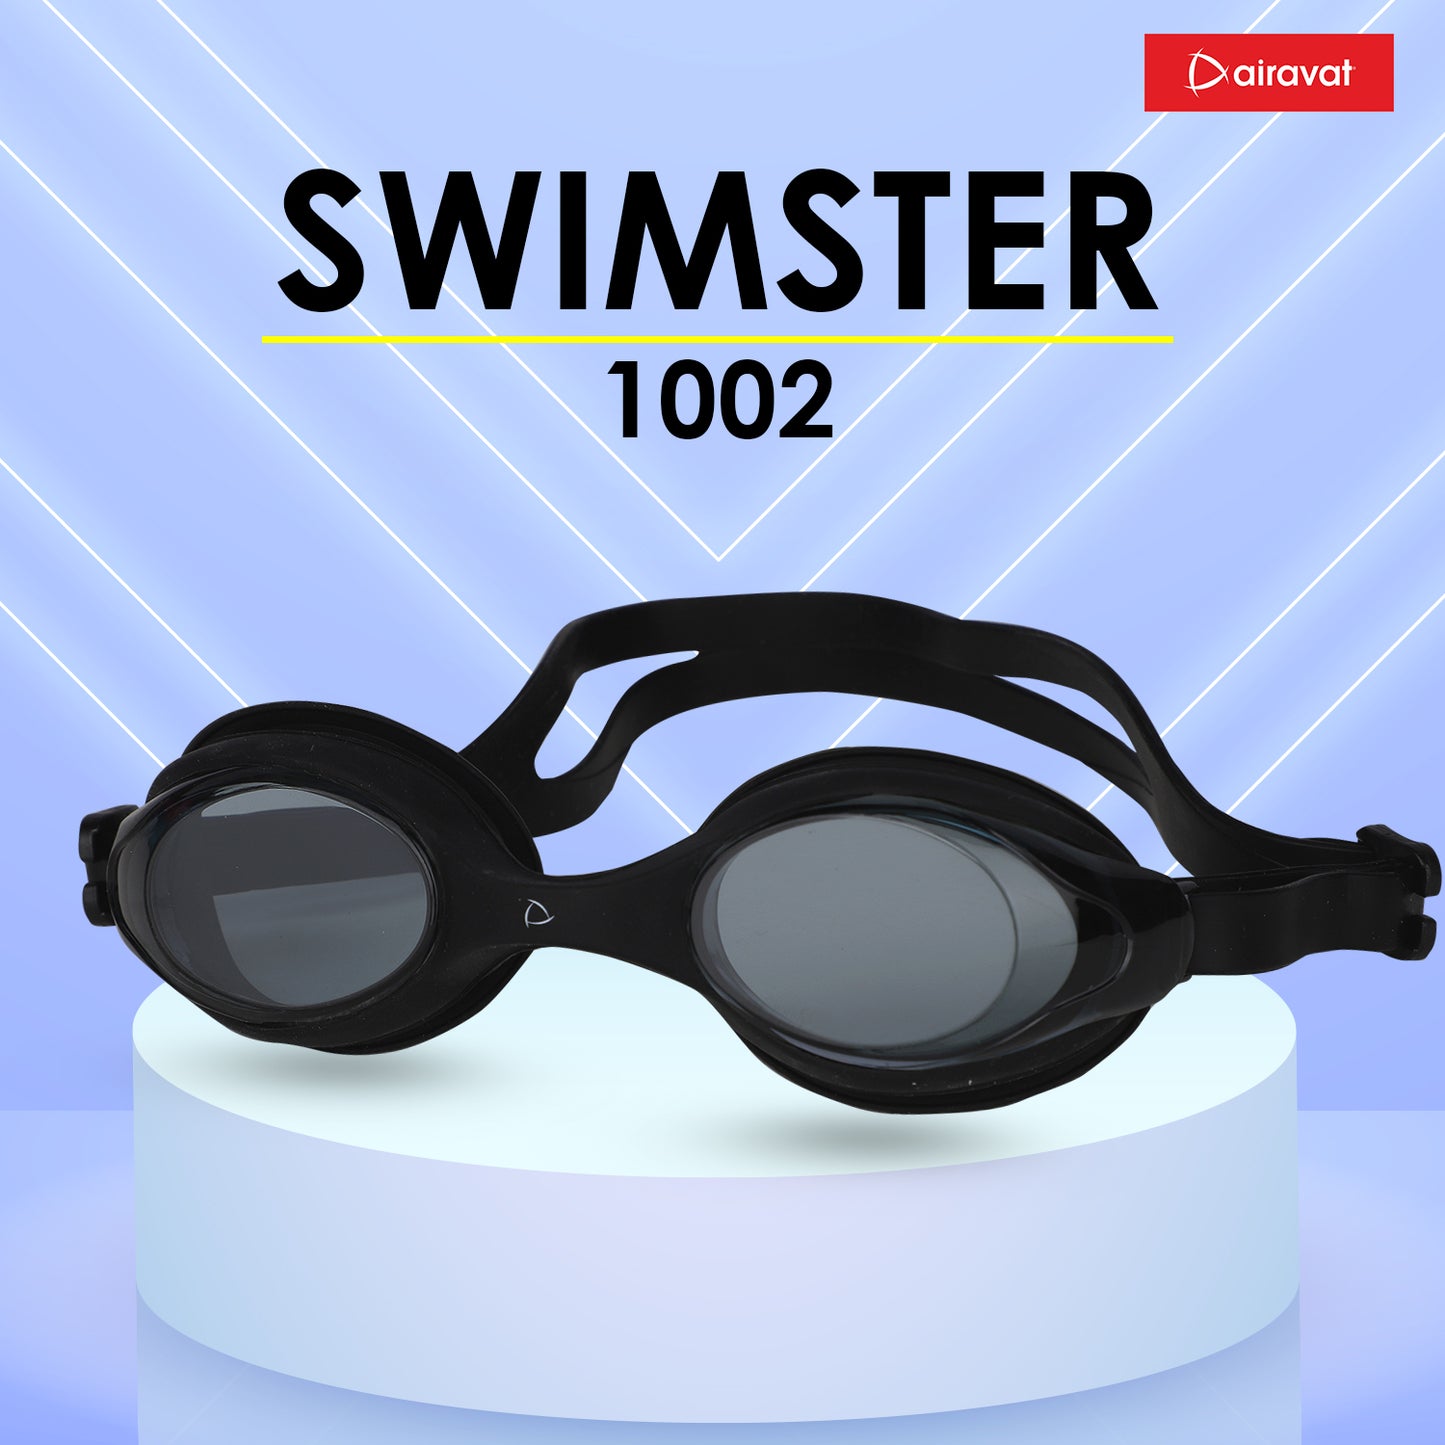 SWIMSTER 1002